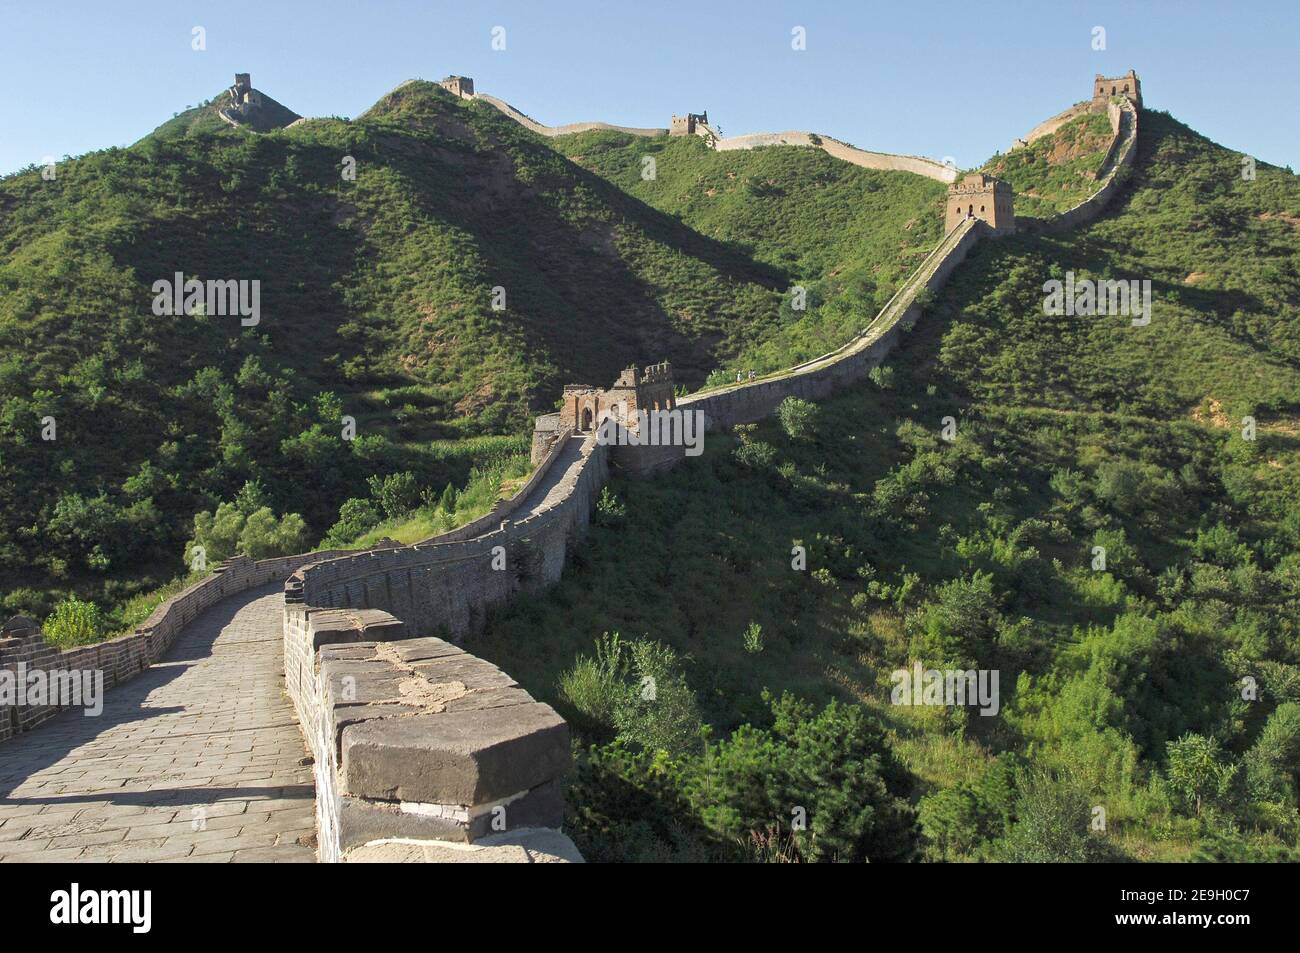 La Grande Muraille de Chine photographiée le 21 août 2006. Photo de Nicolas Gouhier/ABACAPRESS.COM Banque D'Images